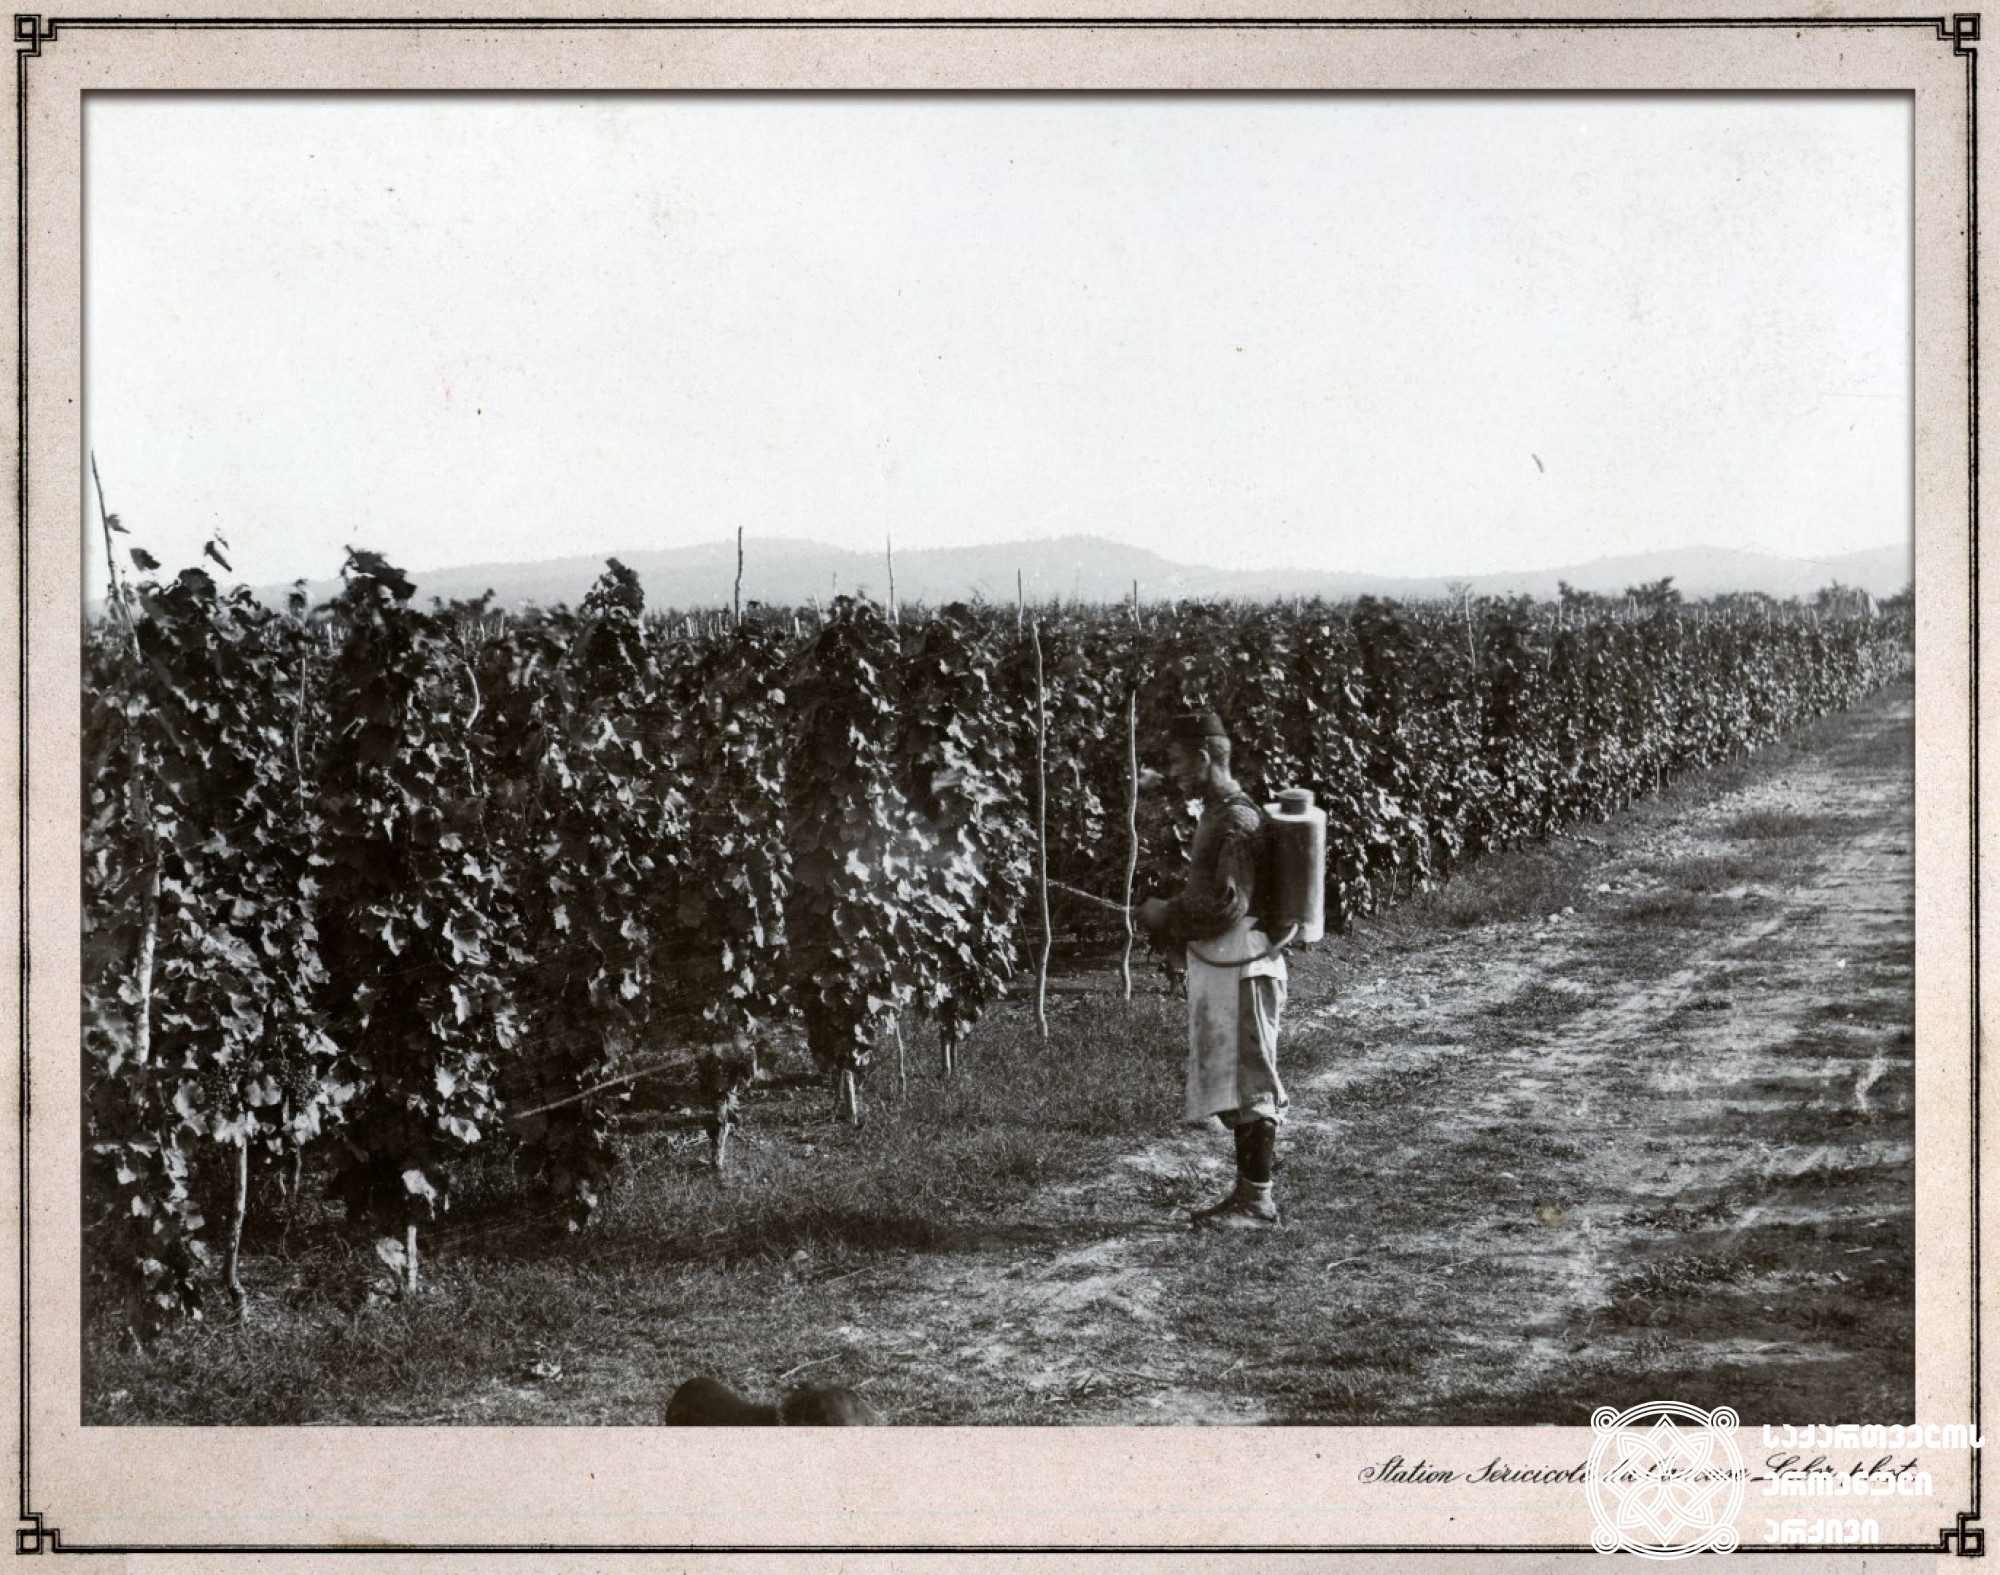 ვაზის შეწამვლა <br>
ფოტო: კონსტანტინე ზანისი <br> 
კახეთი, 1900-1905 წლები <br> 

Spraying of vineyard <br> 
Photo by Konstantin Zanis <br>
Kakheti, 1900-1905